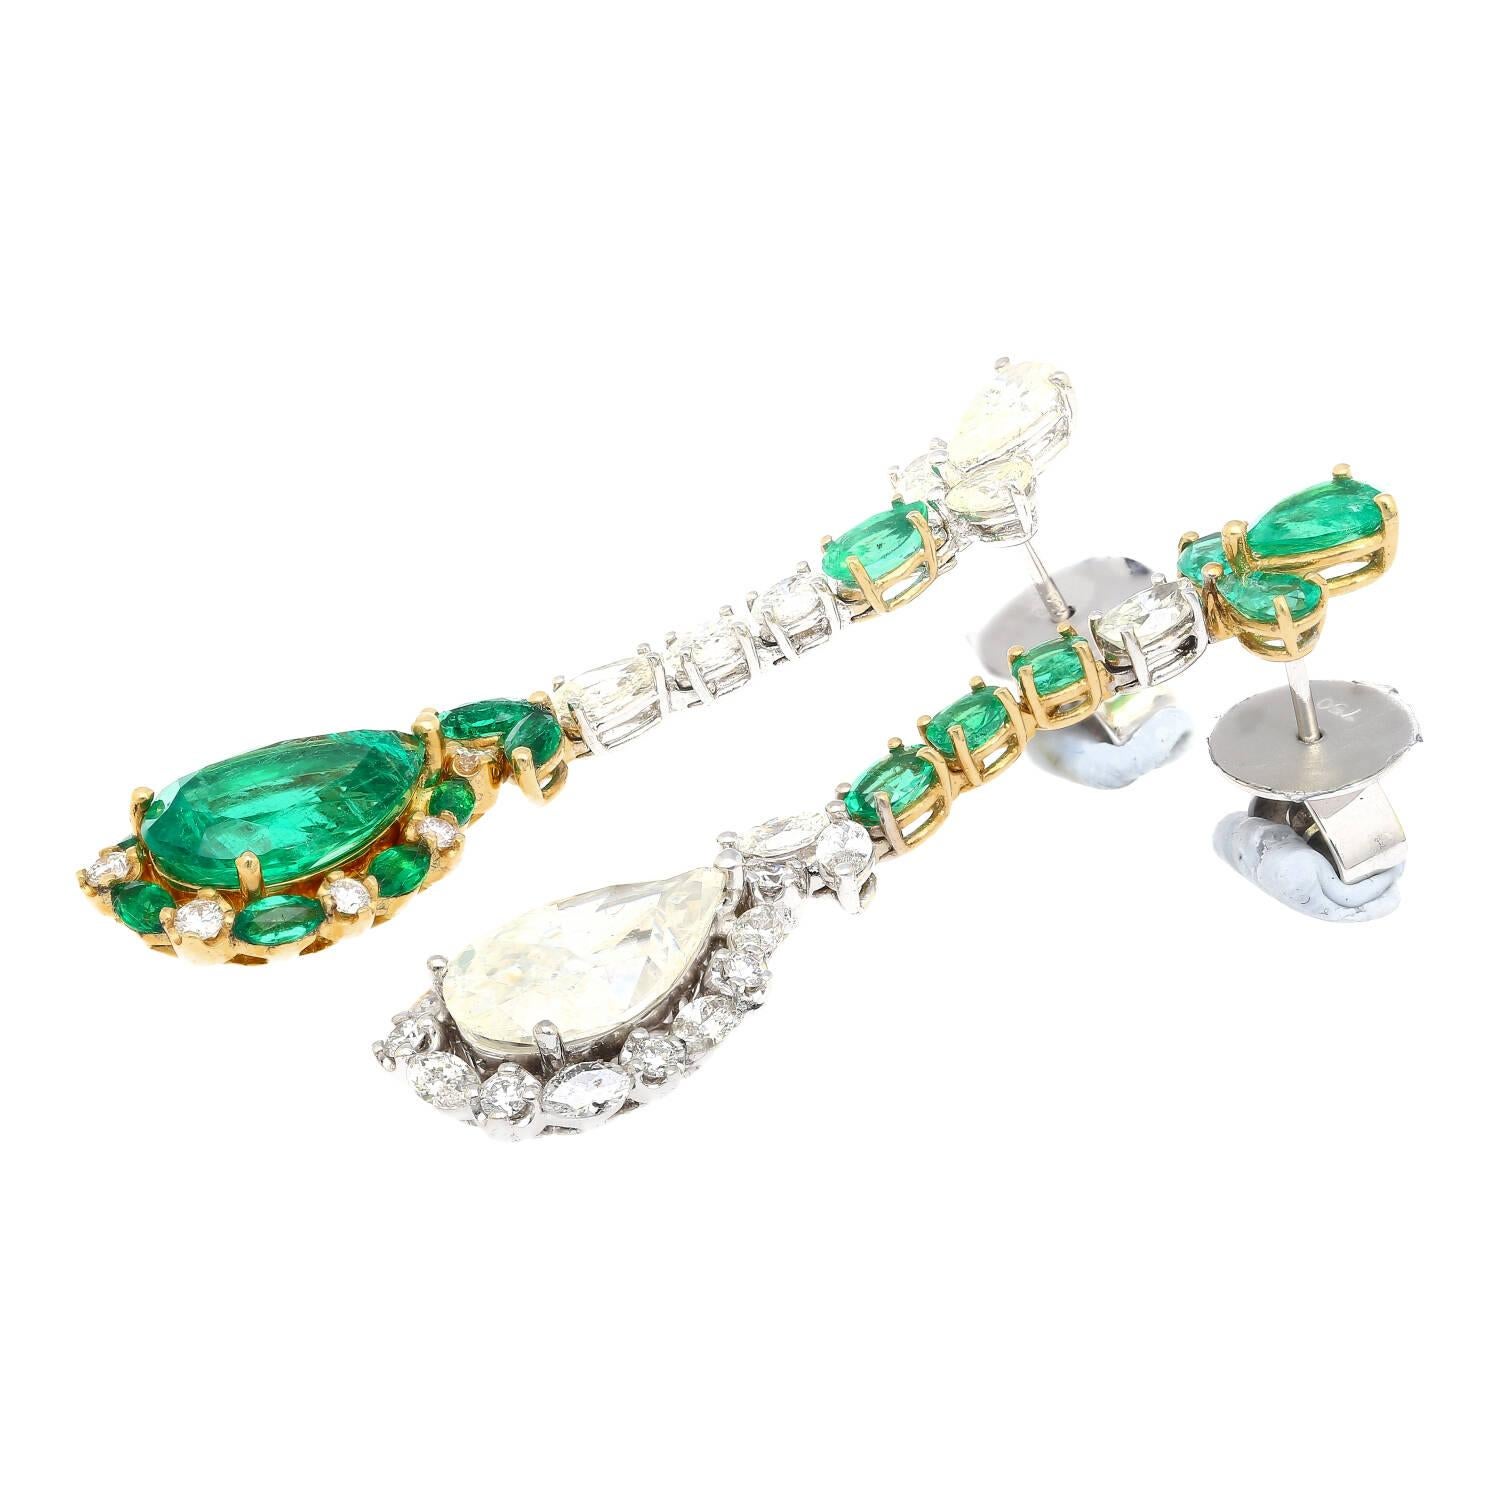 10 carat emerald price